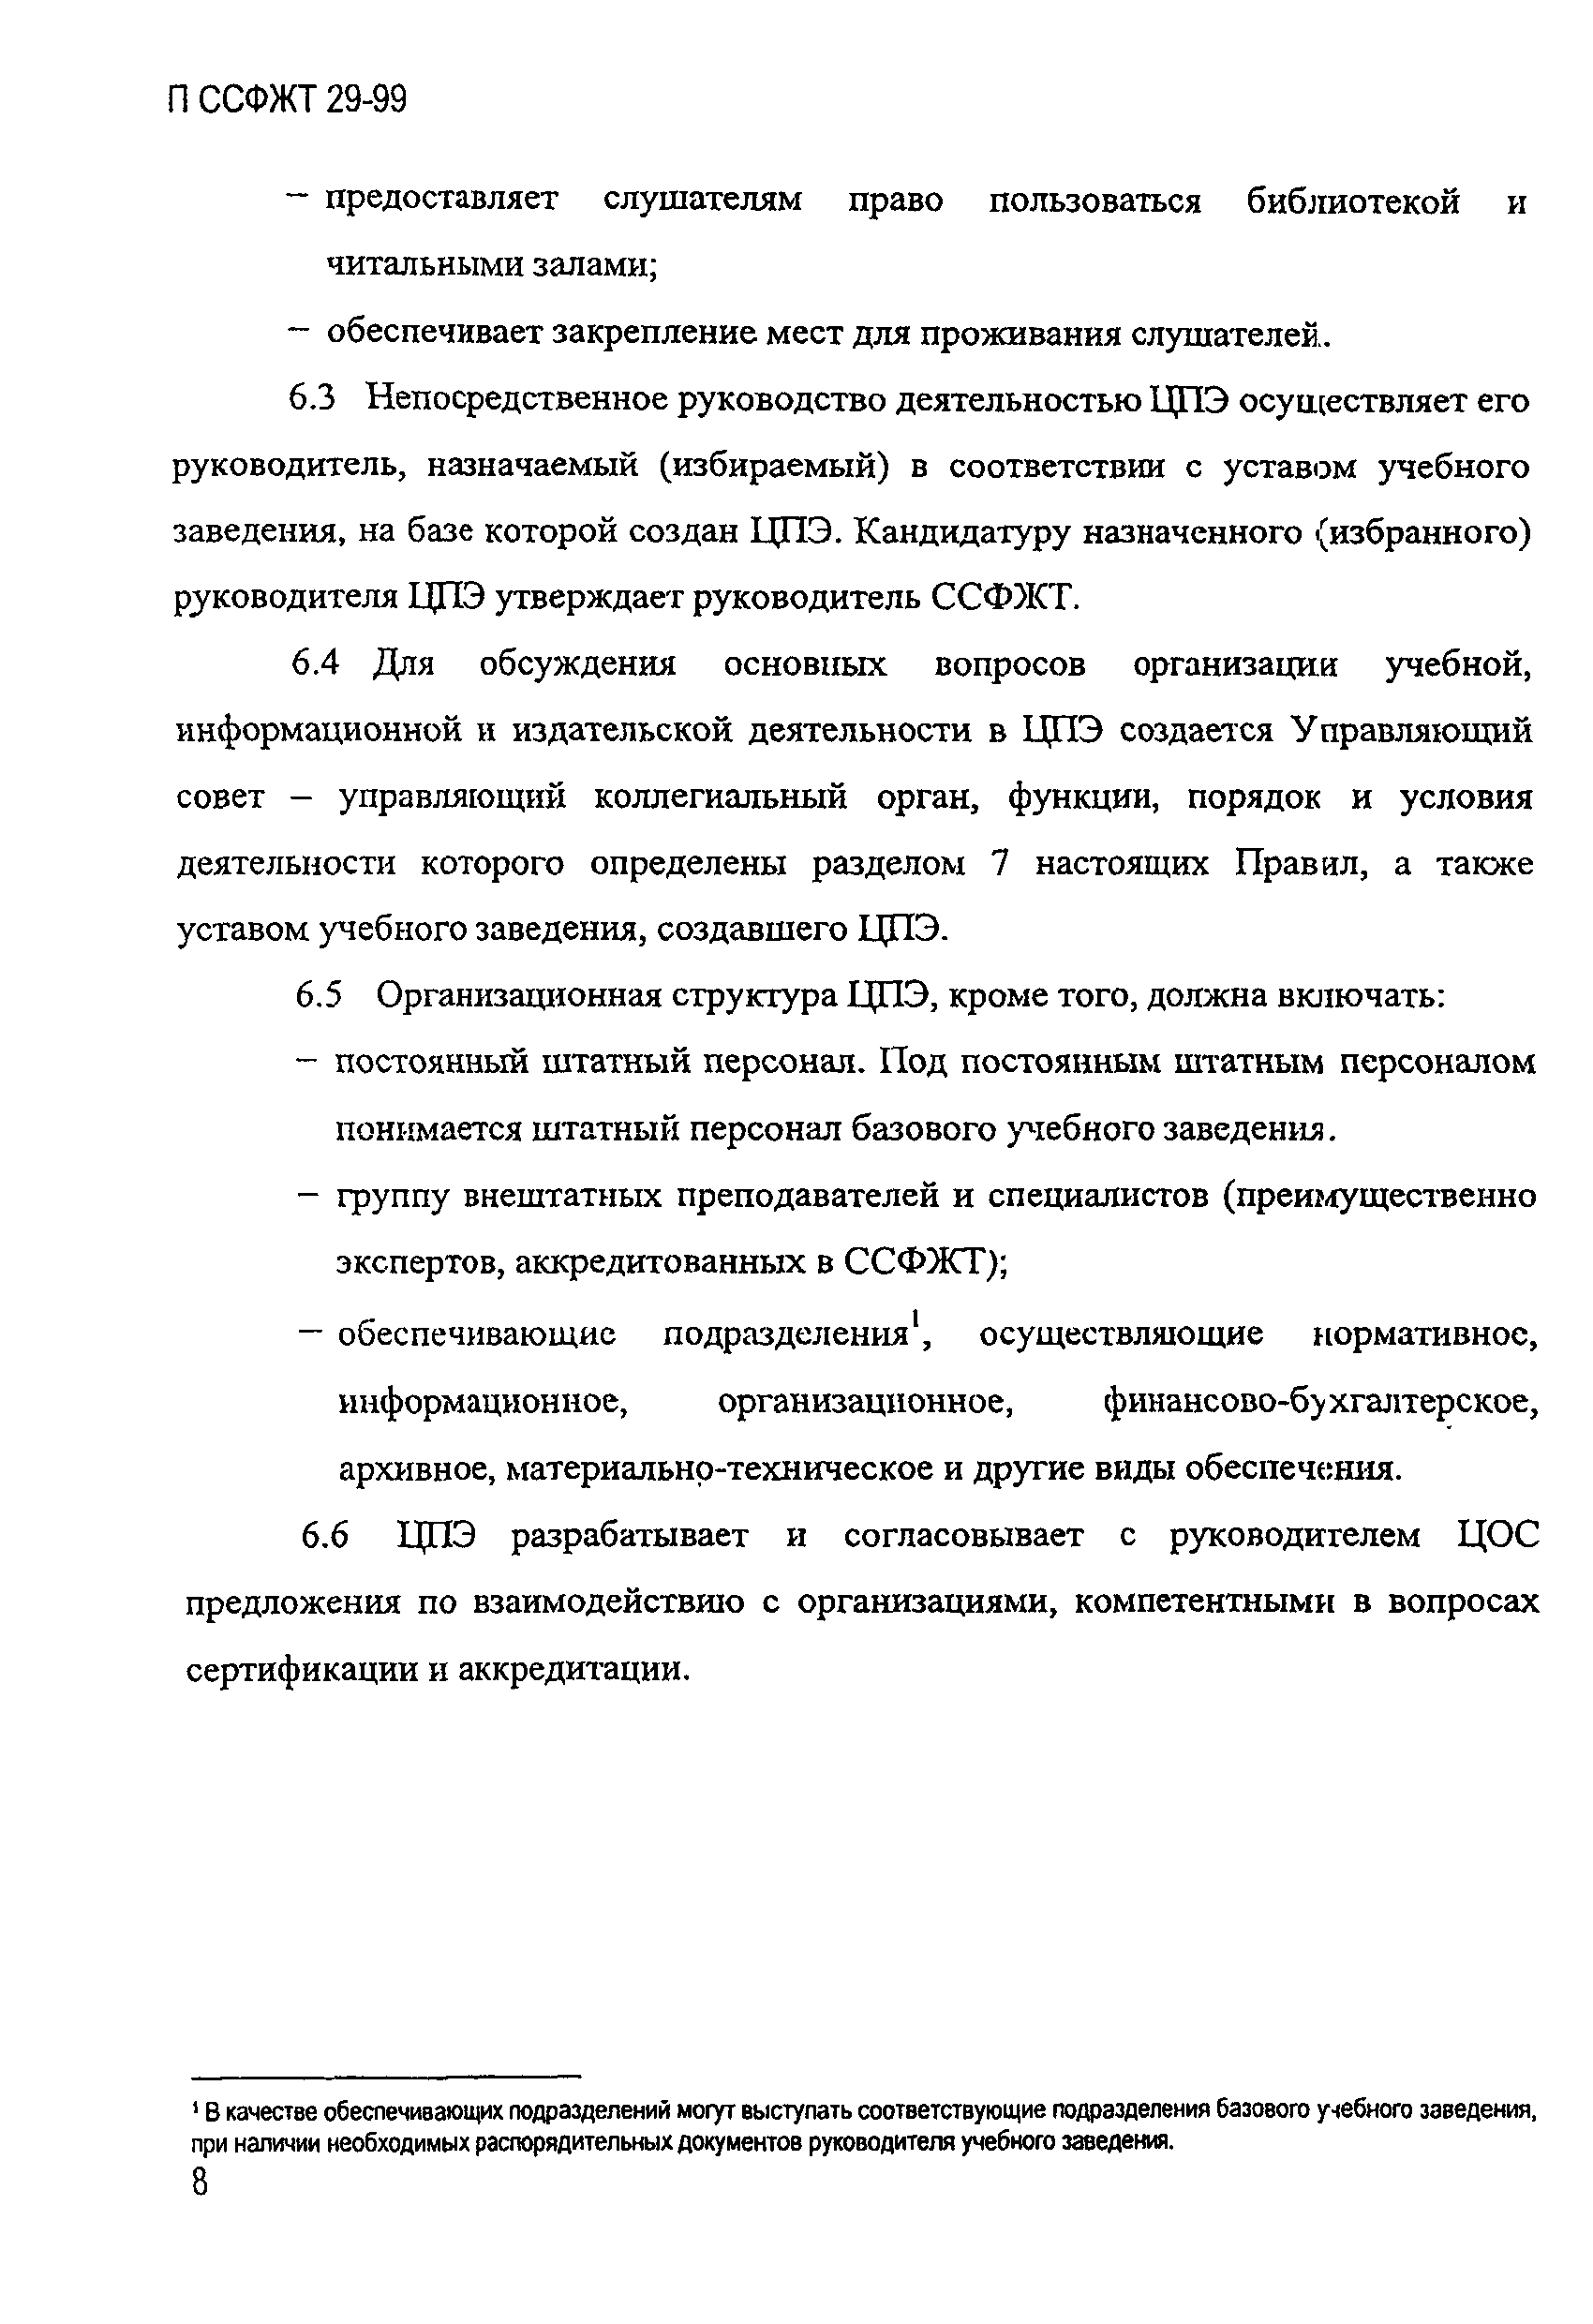 П ССФЖТ 29-99